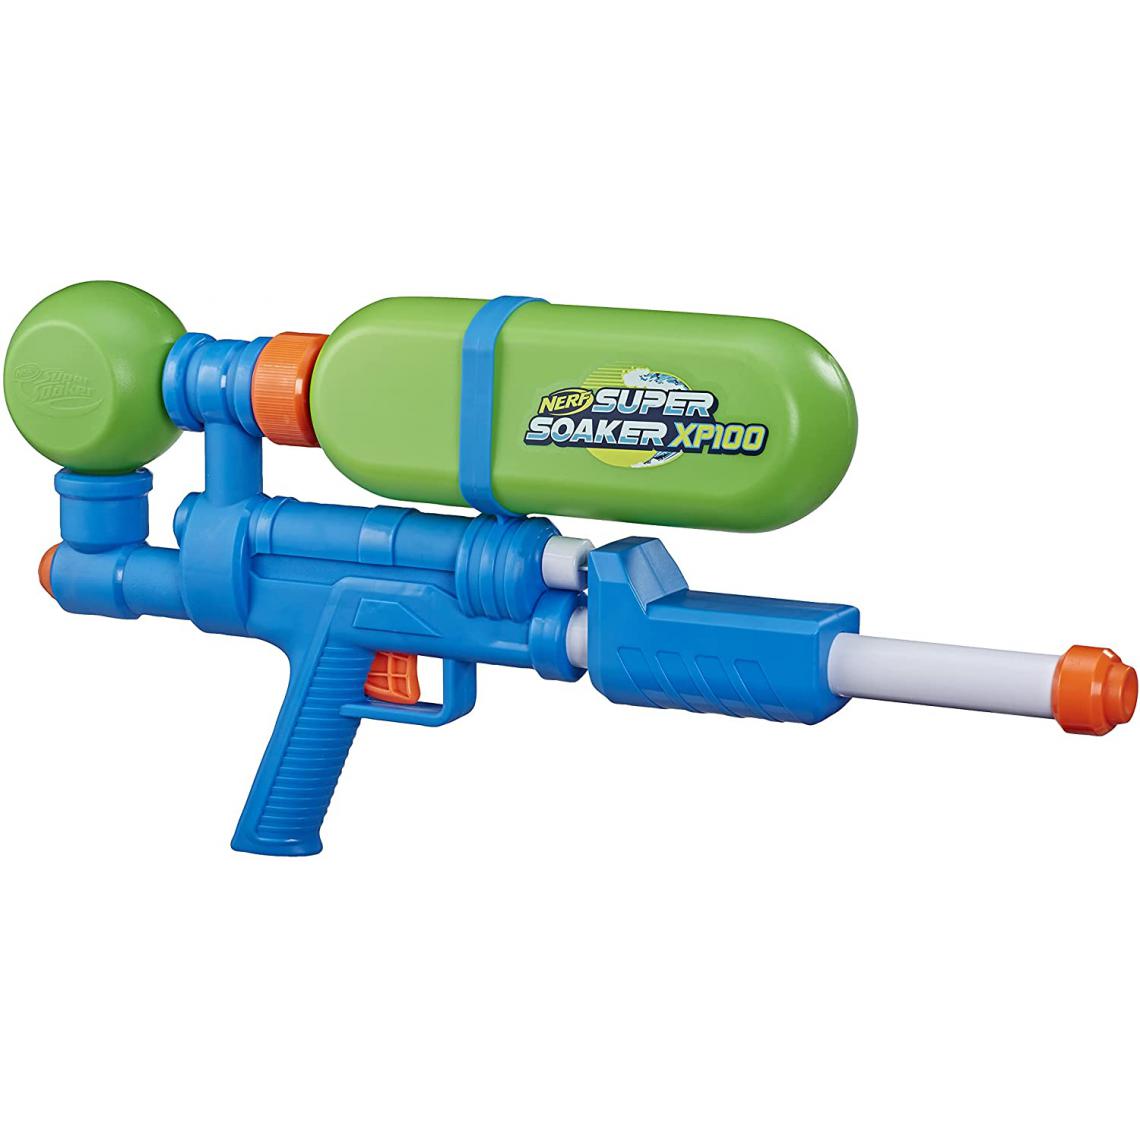 Nerf - pistolet a eau super Soaker XP100 vert bleu - Jeux d'adresse